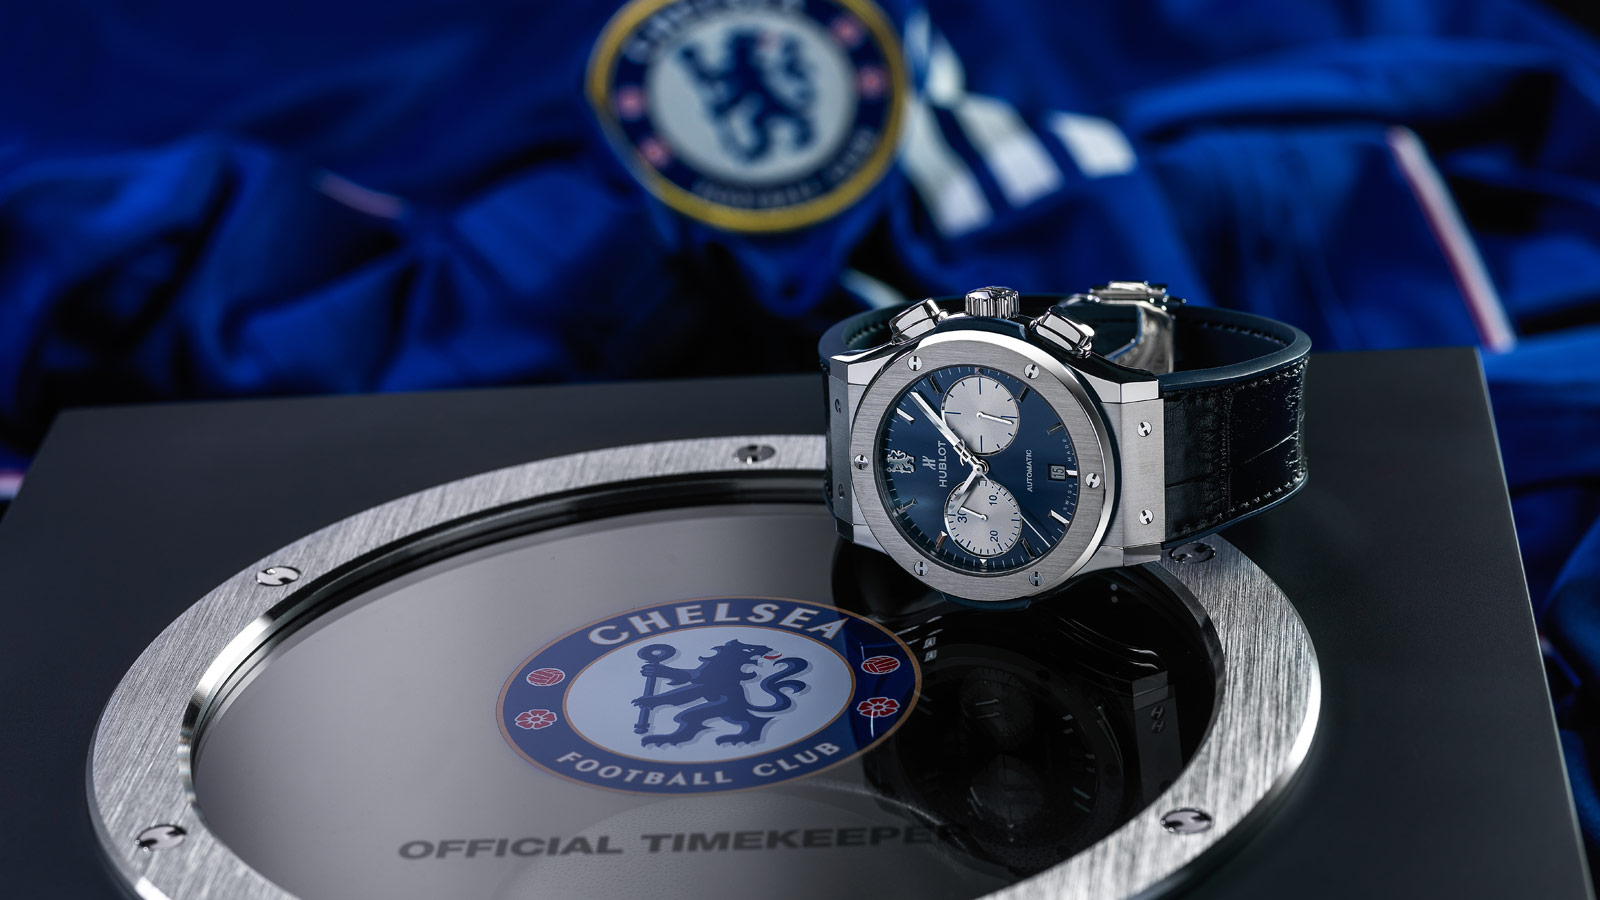 Hublot Watch, Chelsea Watch, Sports Watch, Luxury Watch